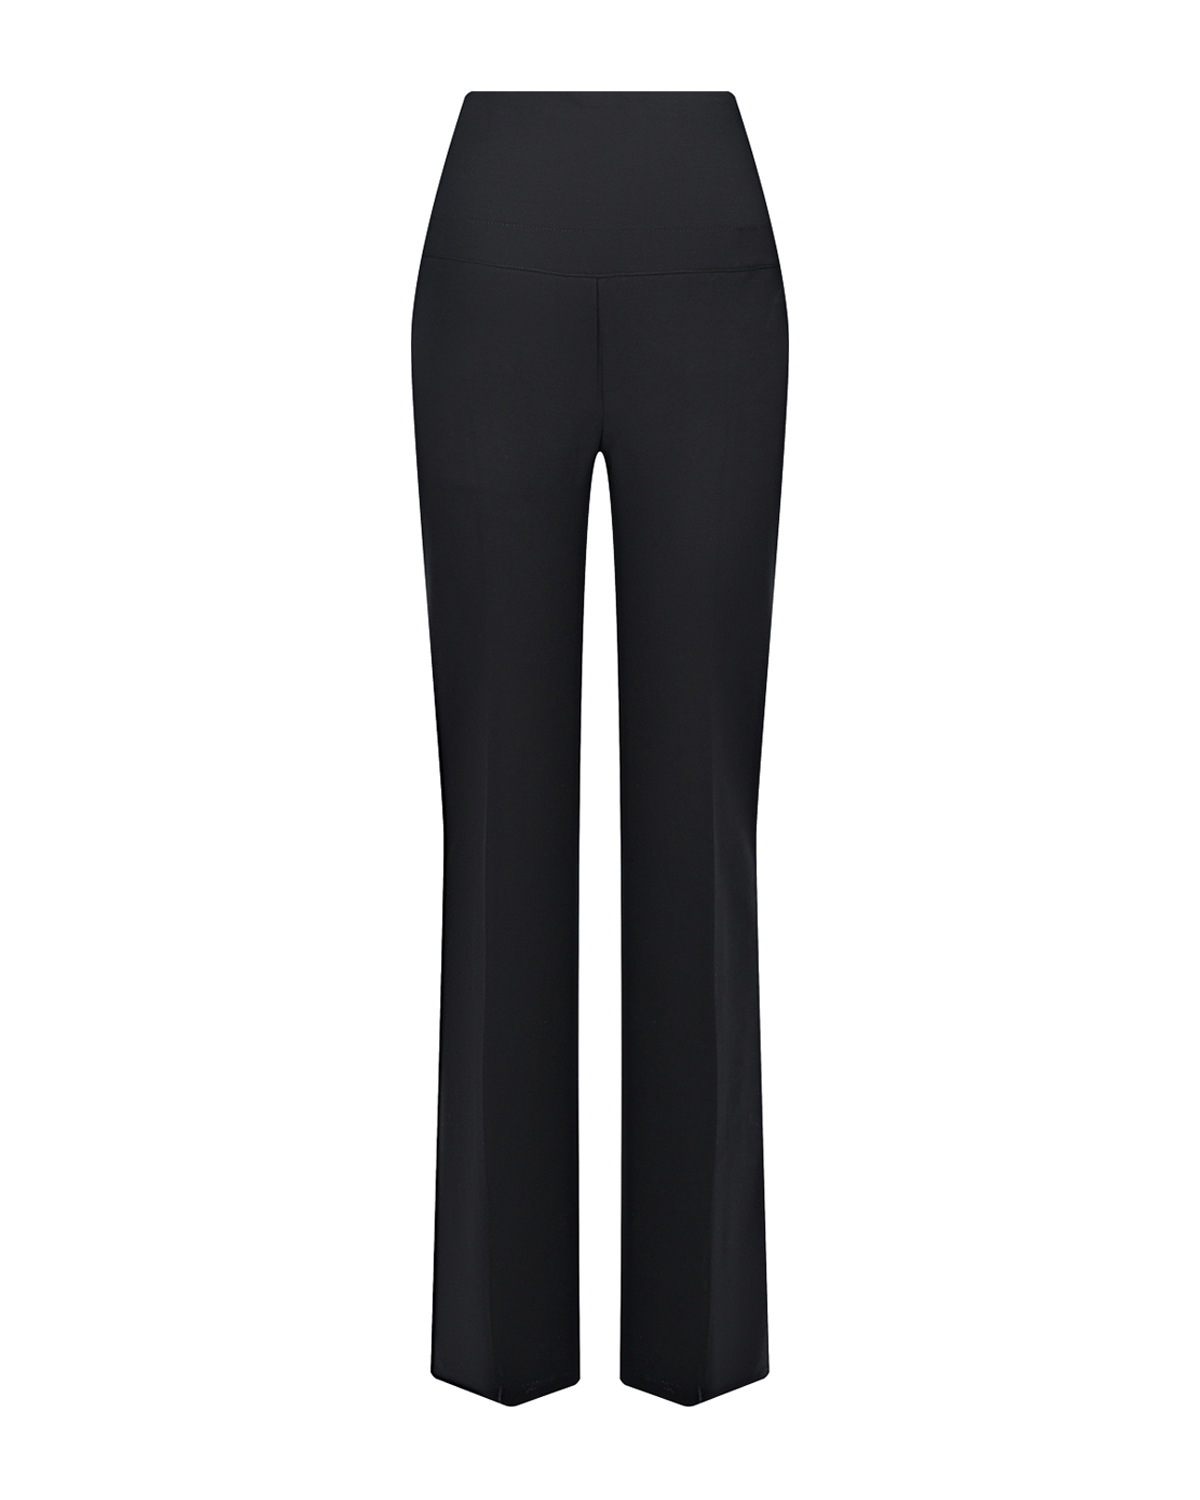 Черные брюки для беременных Comfy LEO Pietro Brunelli, размер 40, цвет черный - фото 1